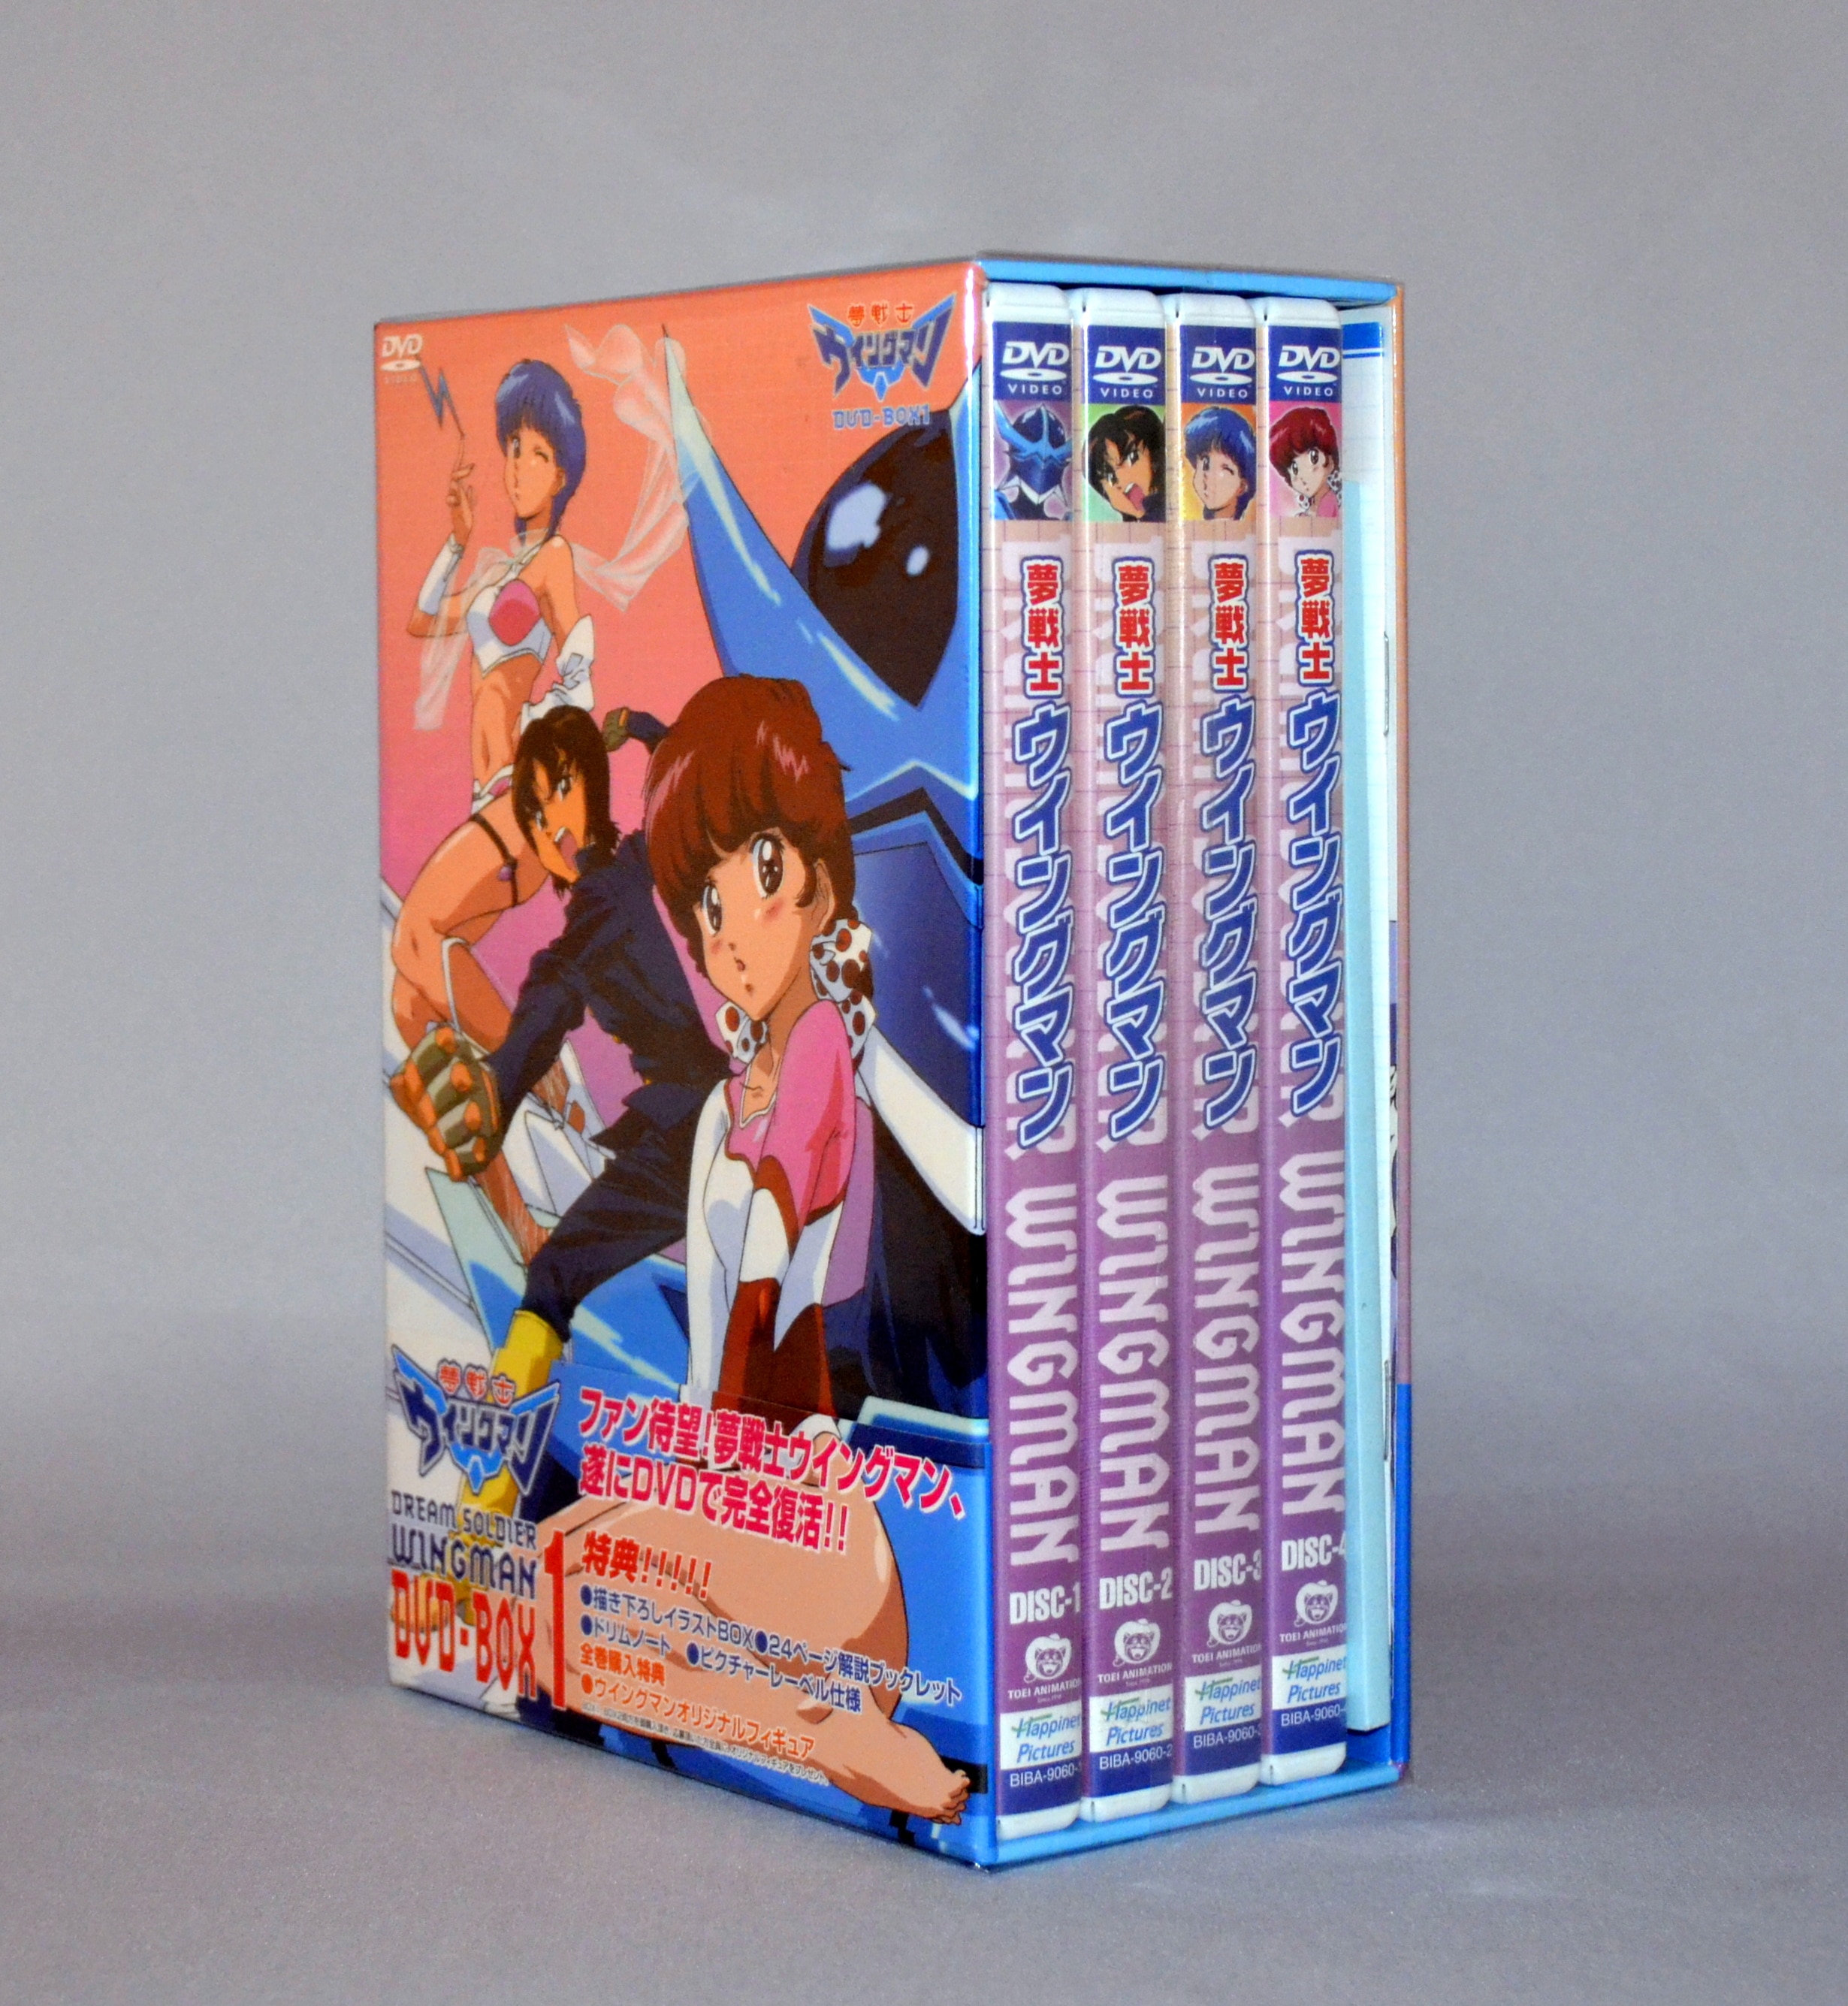 夢戦士ウイングマン DVD BOX 1.2 | guelcan-arslan.de